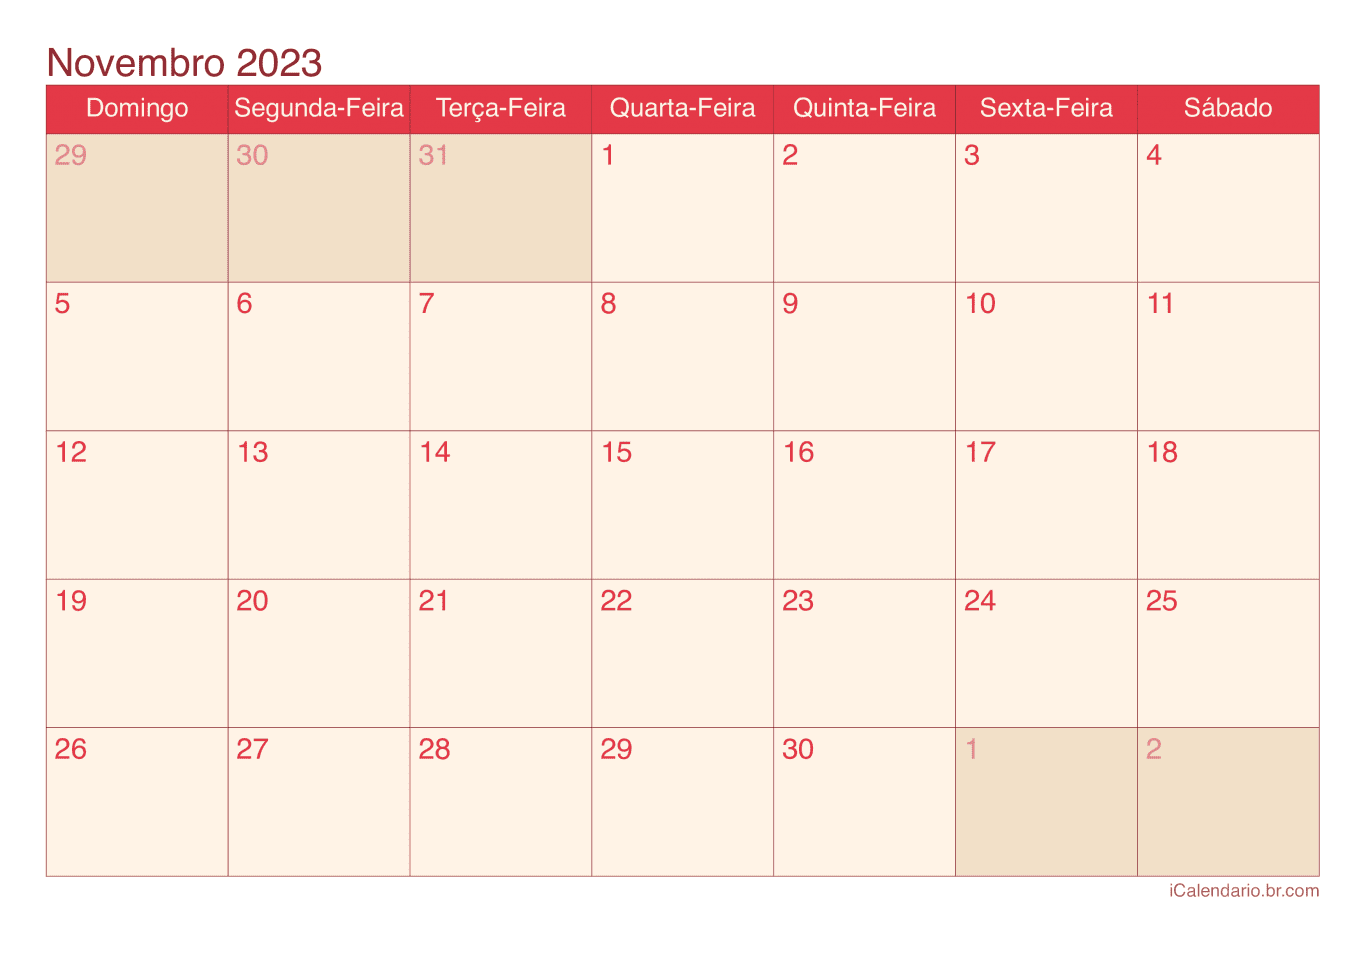 Calendário de novembro 2023 - Cherry